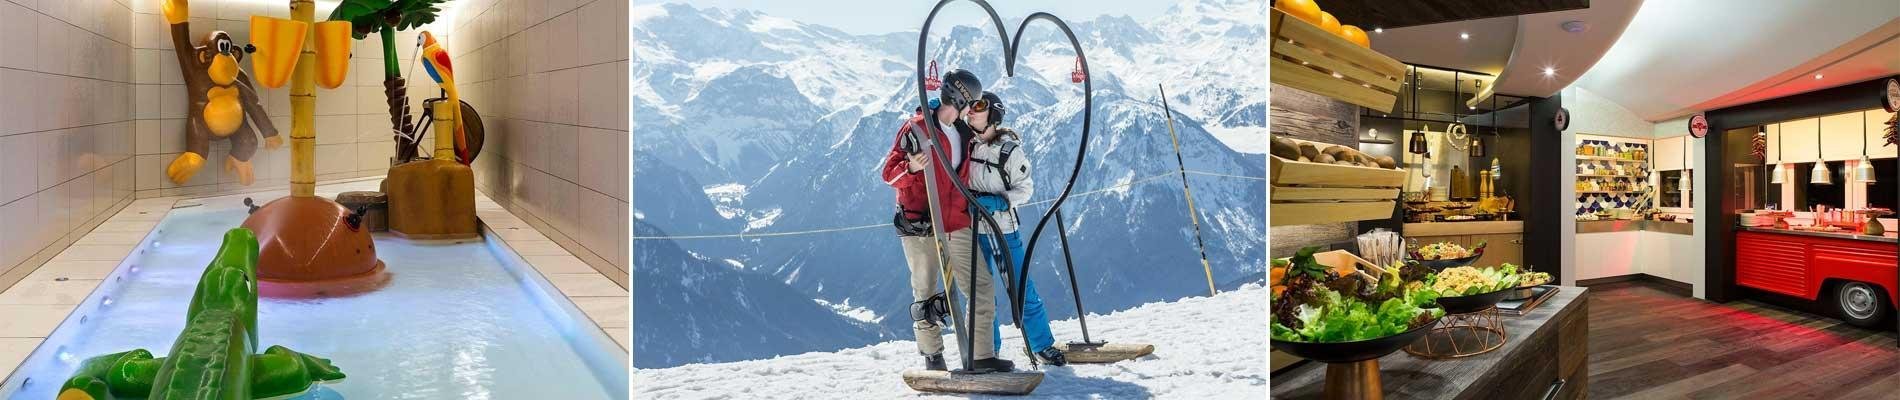 hotel araucaria la plagne kindvriendelijk ski paradiski